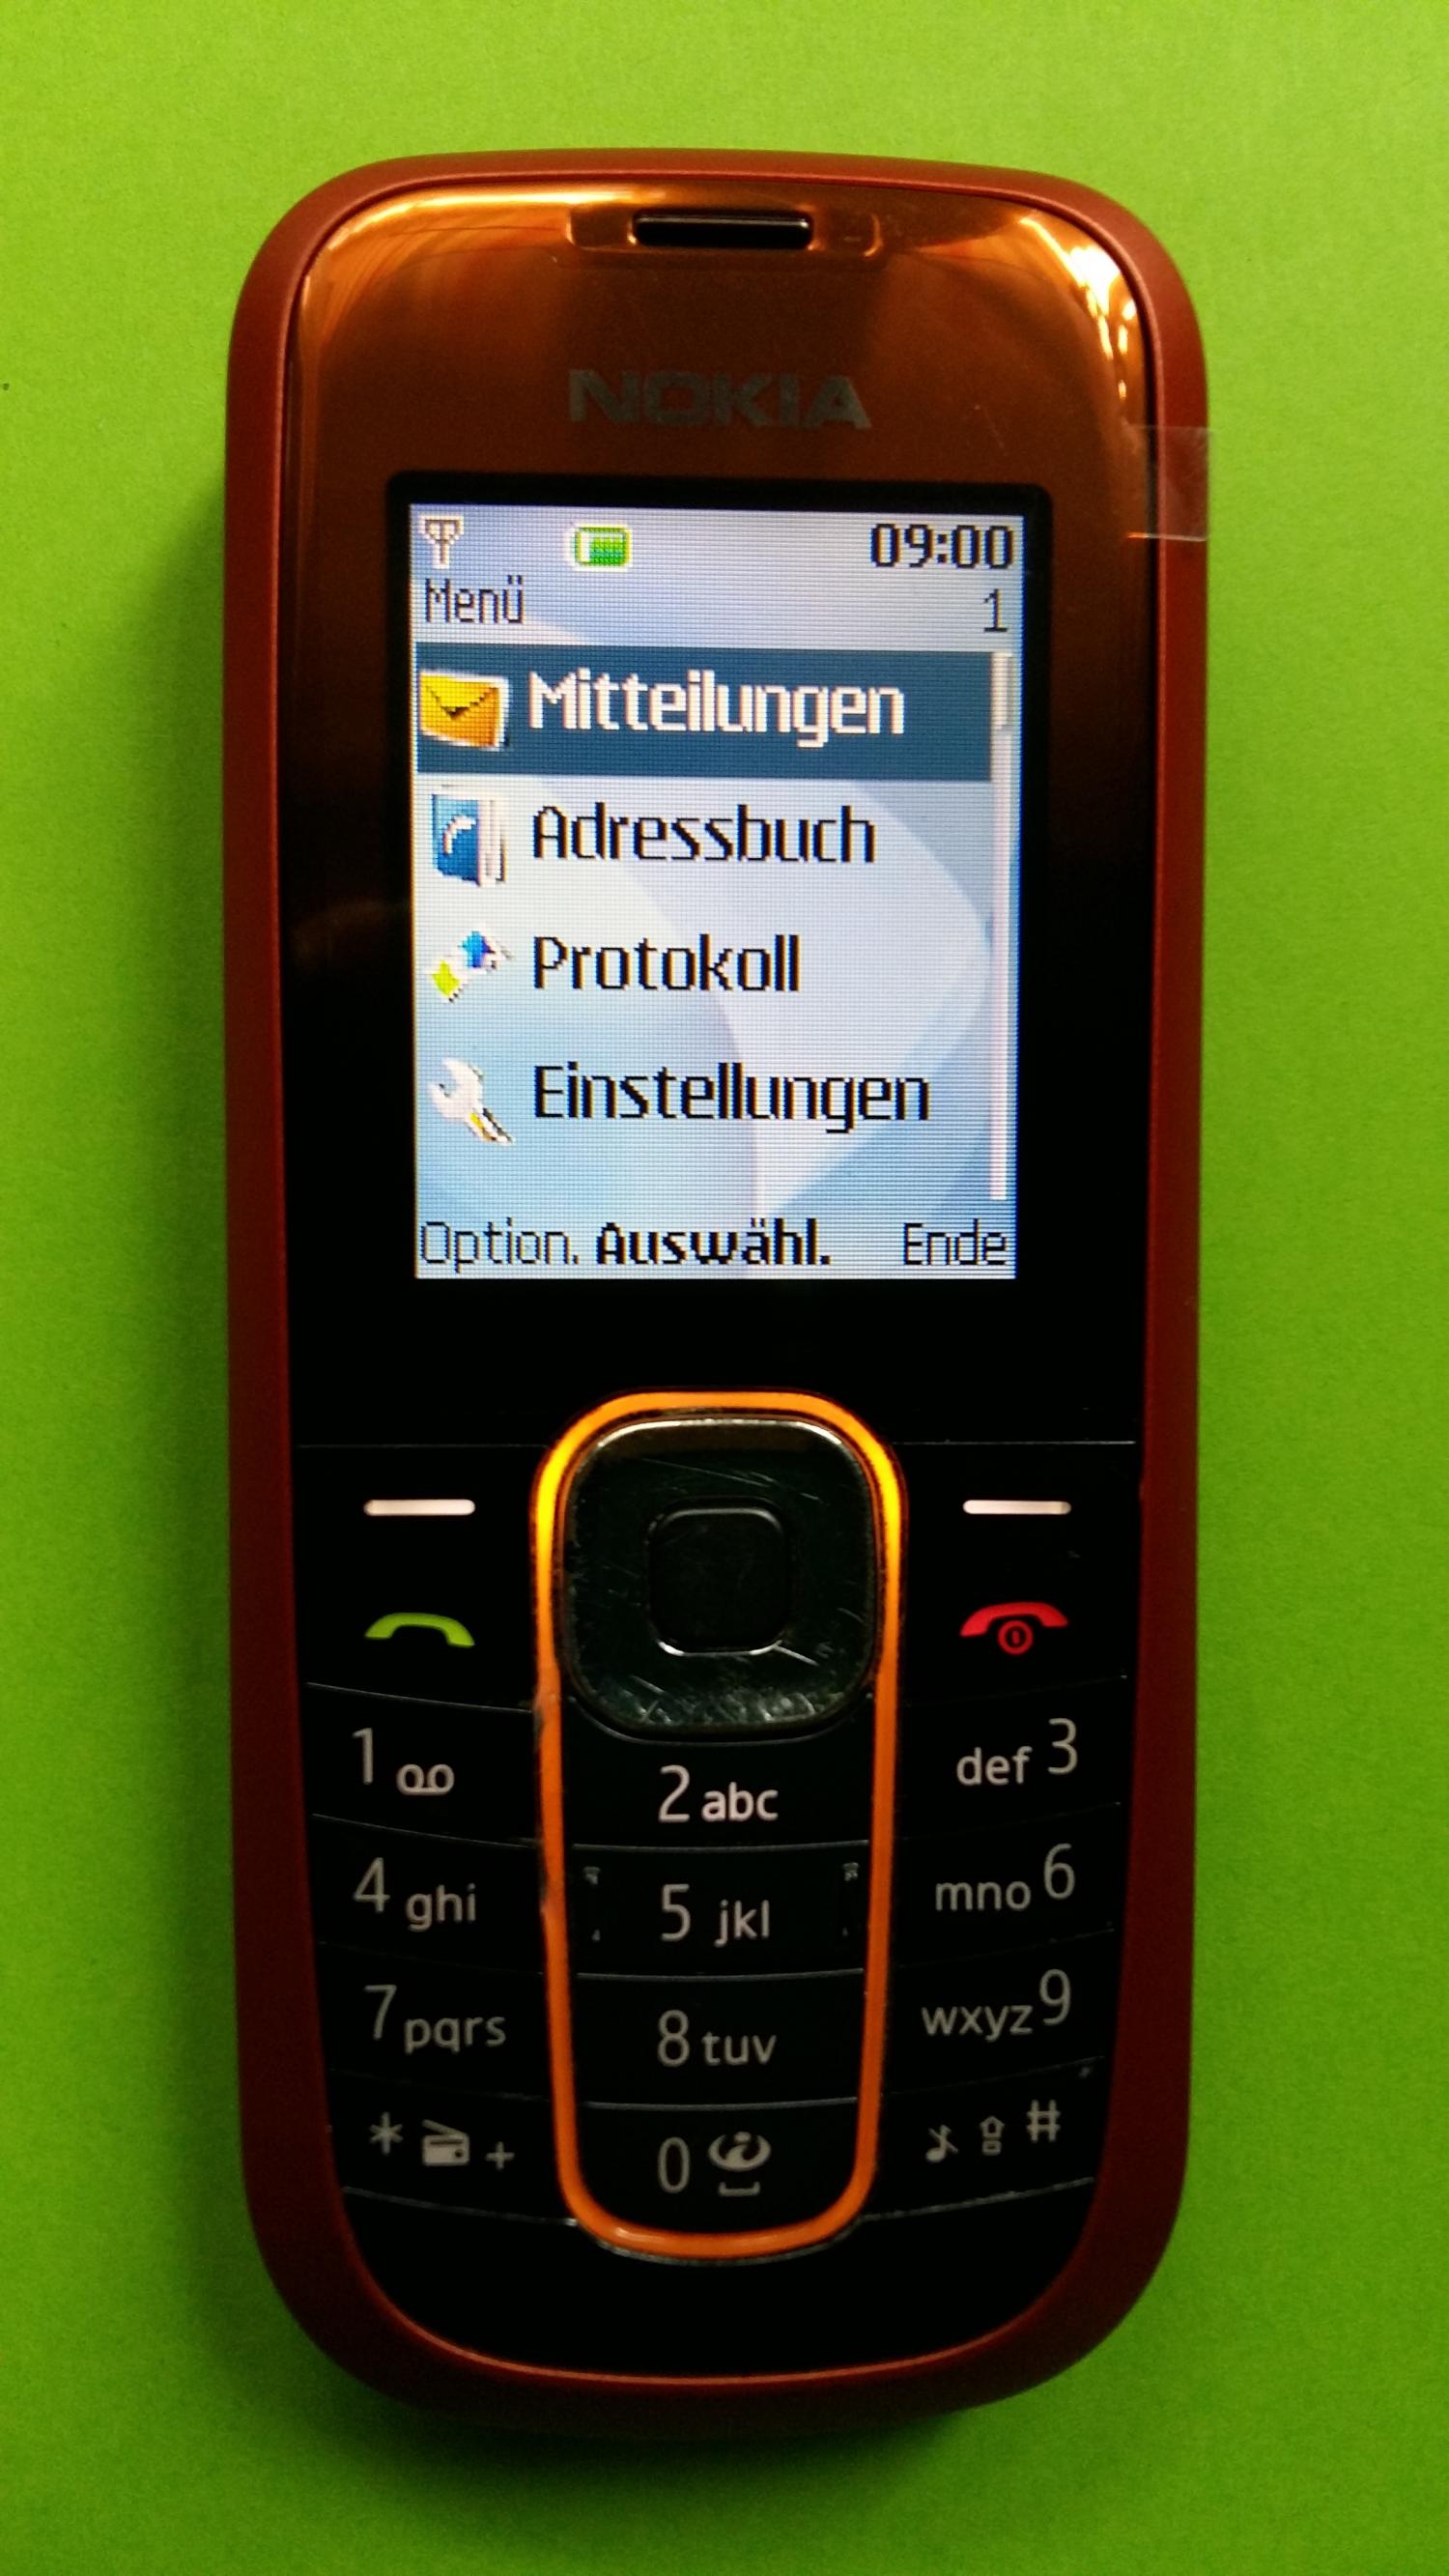 image-7301545-Nokia 2600C-2 (1)1.jpg